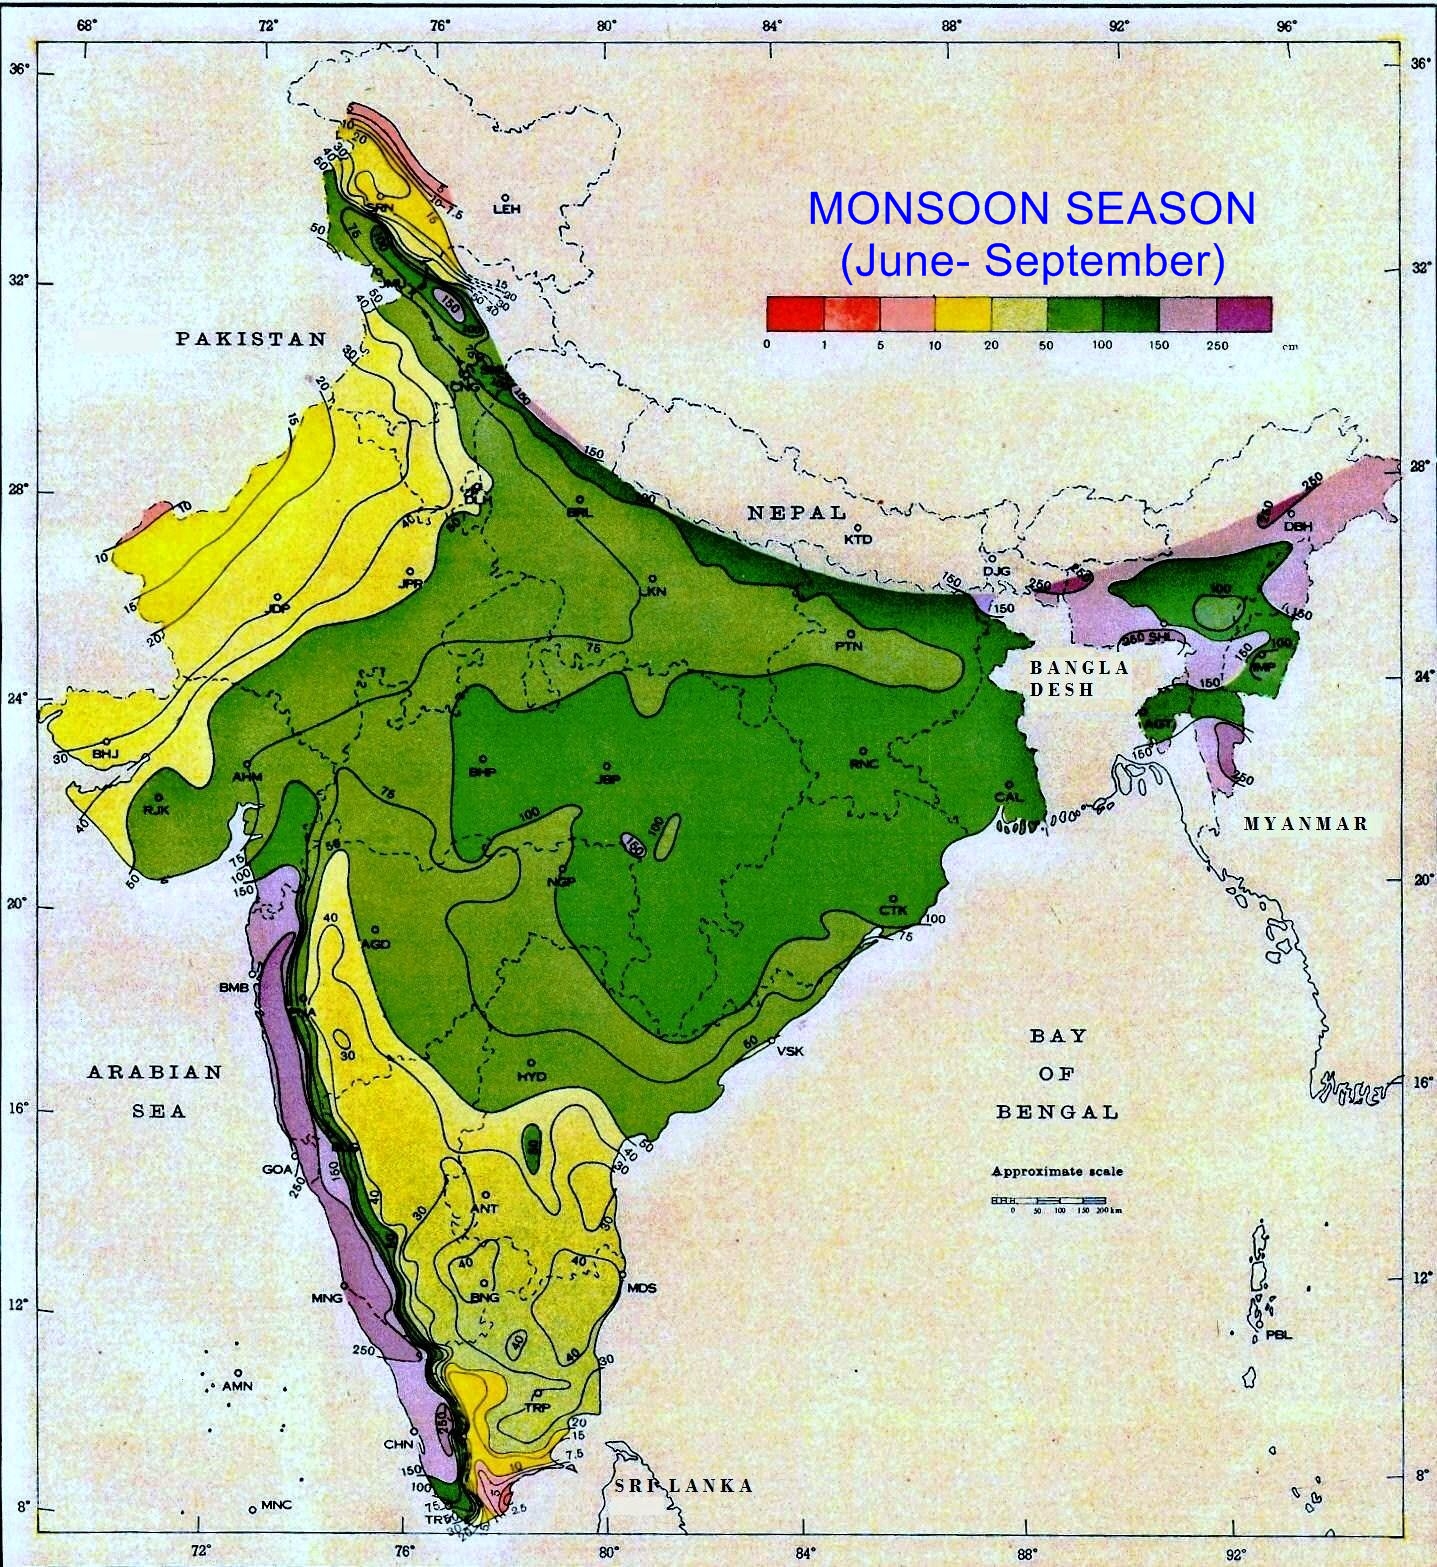 Normal Seasonal Railfall in cm for Monsoon Season between June to Sep